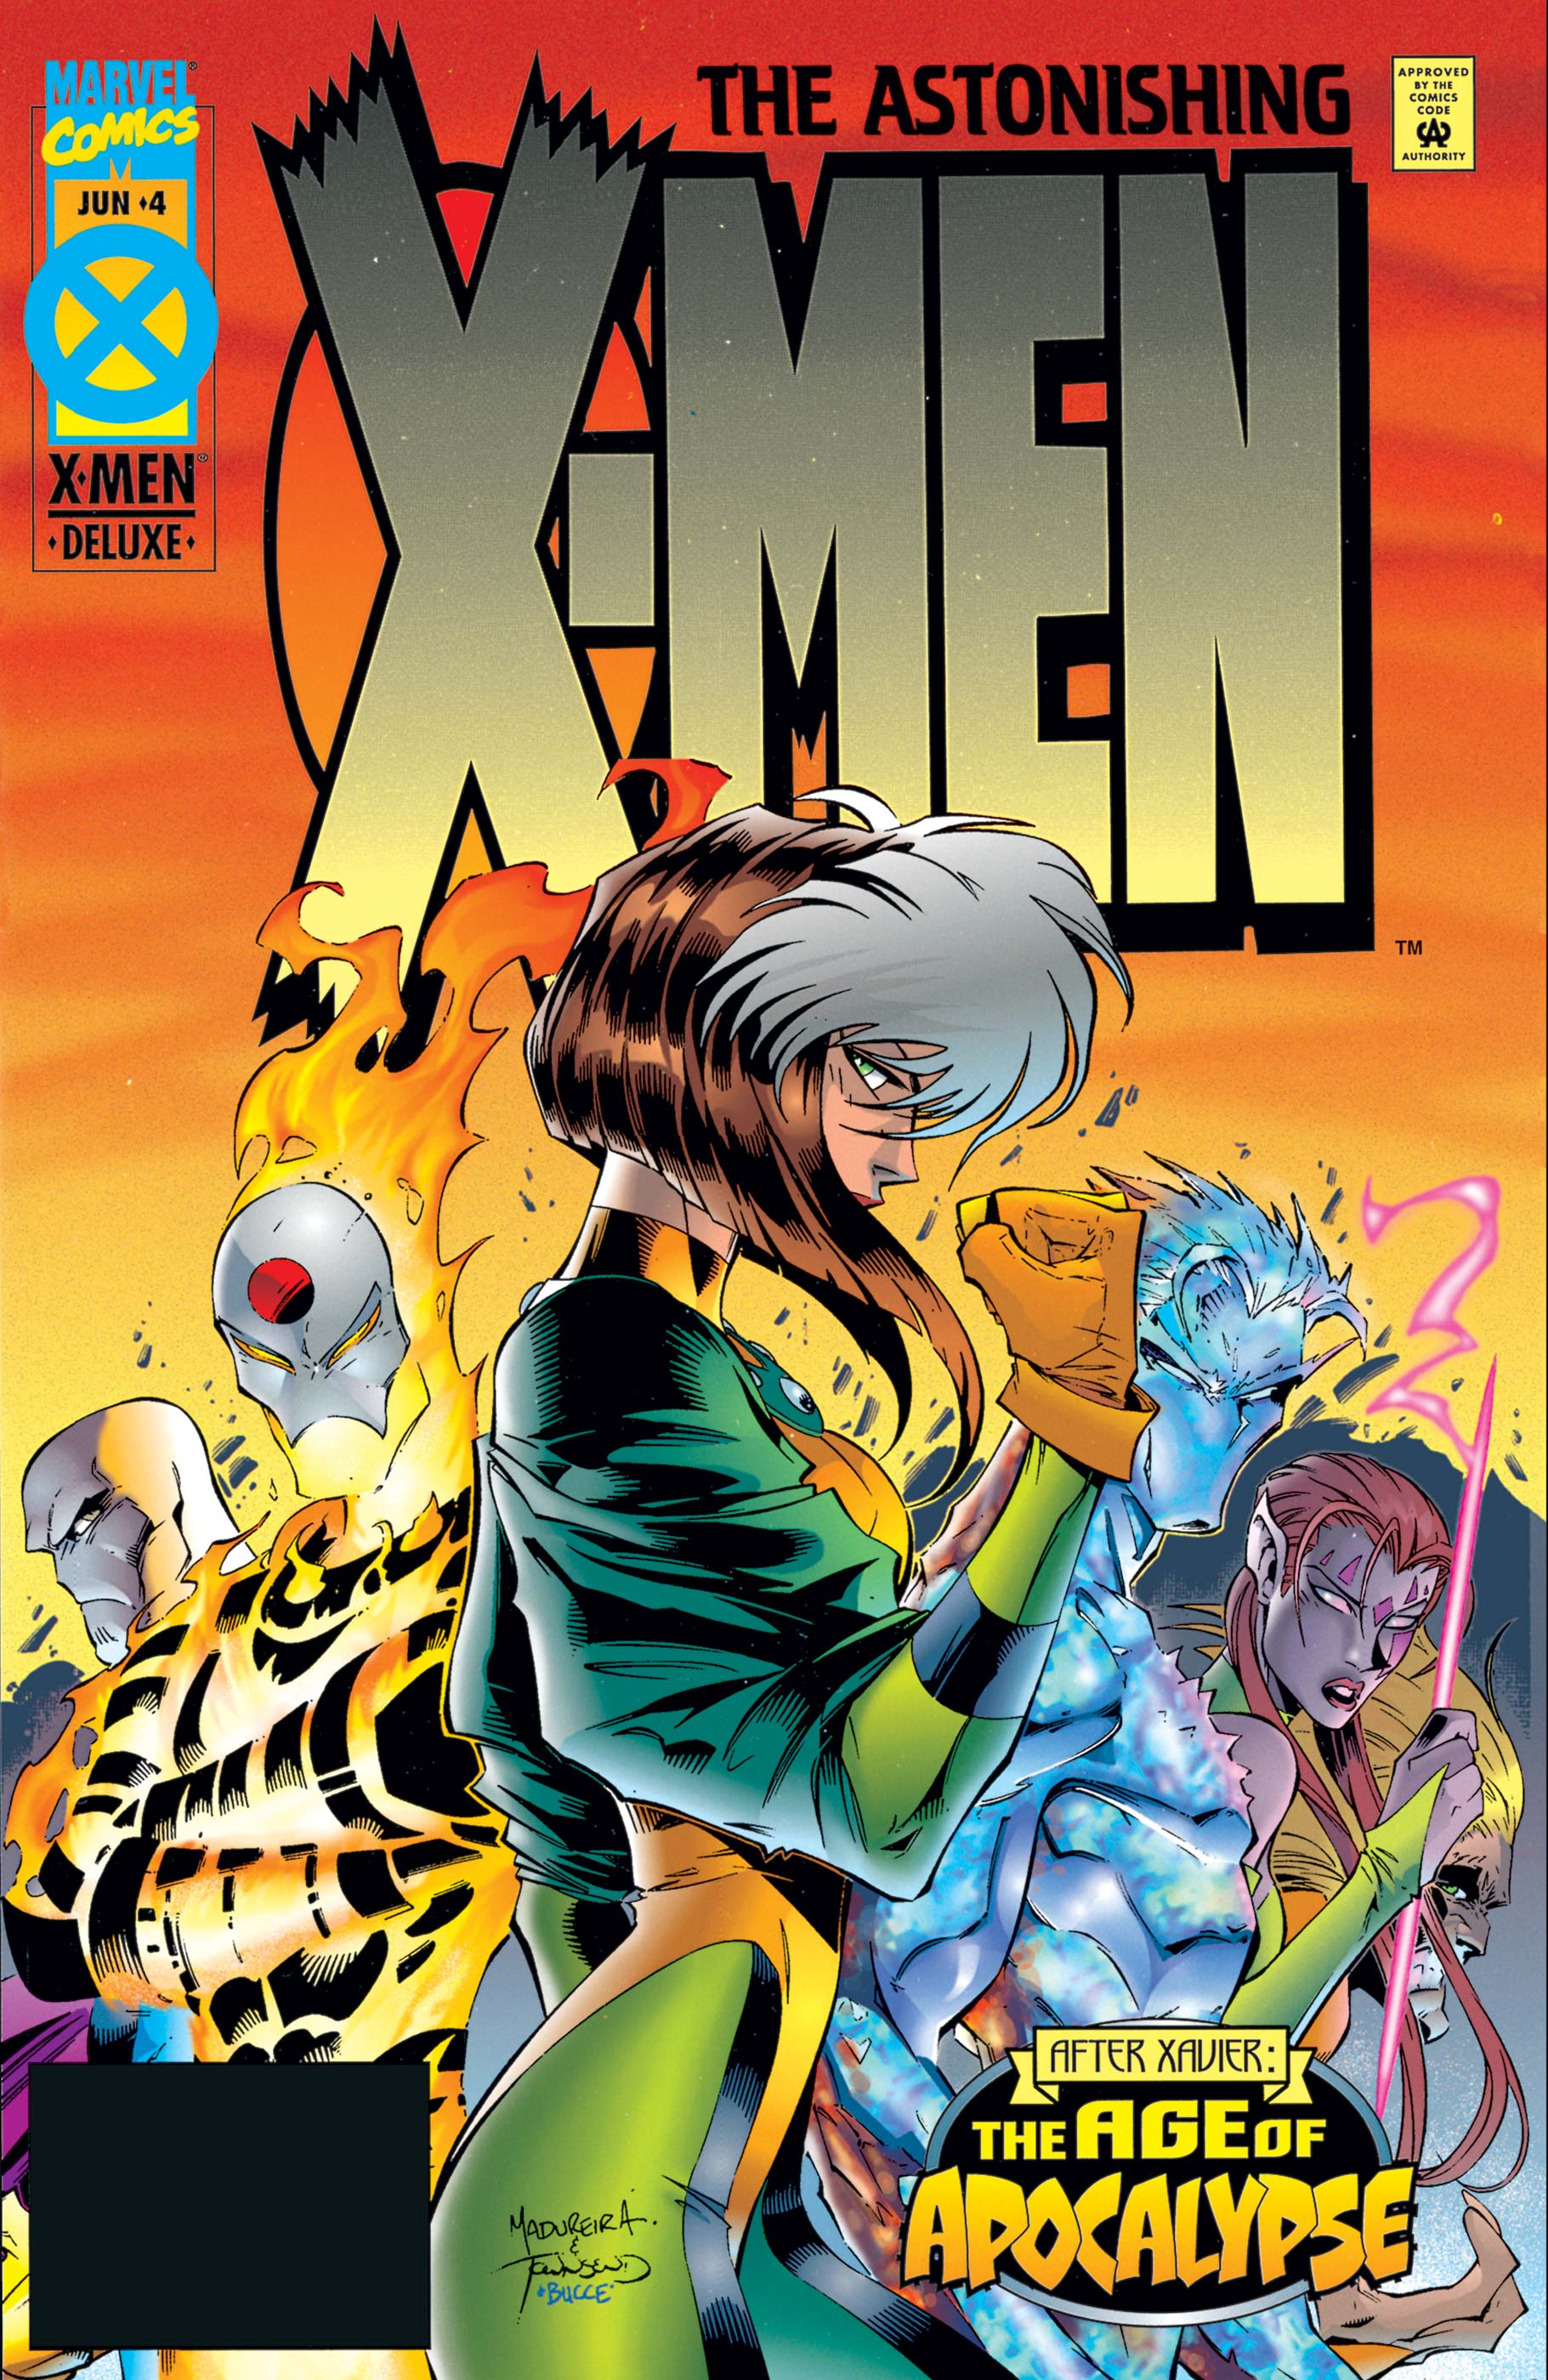 AMAZING X-MEN #1 2 3 4 Complete Marvel Comic Book Series Age of Apocalypse X-Men